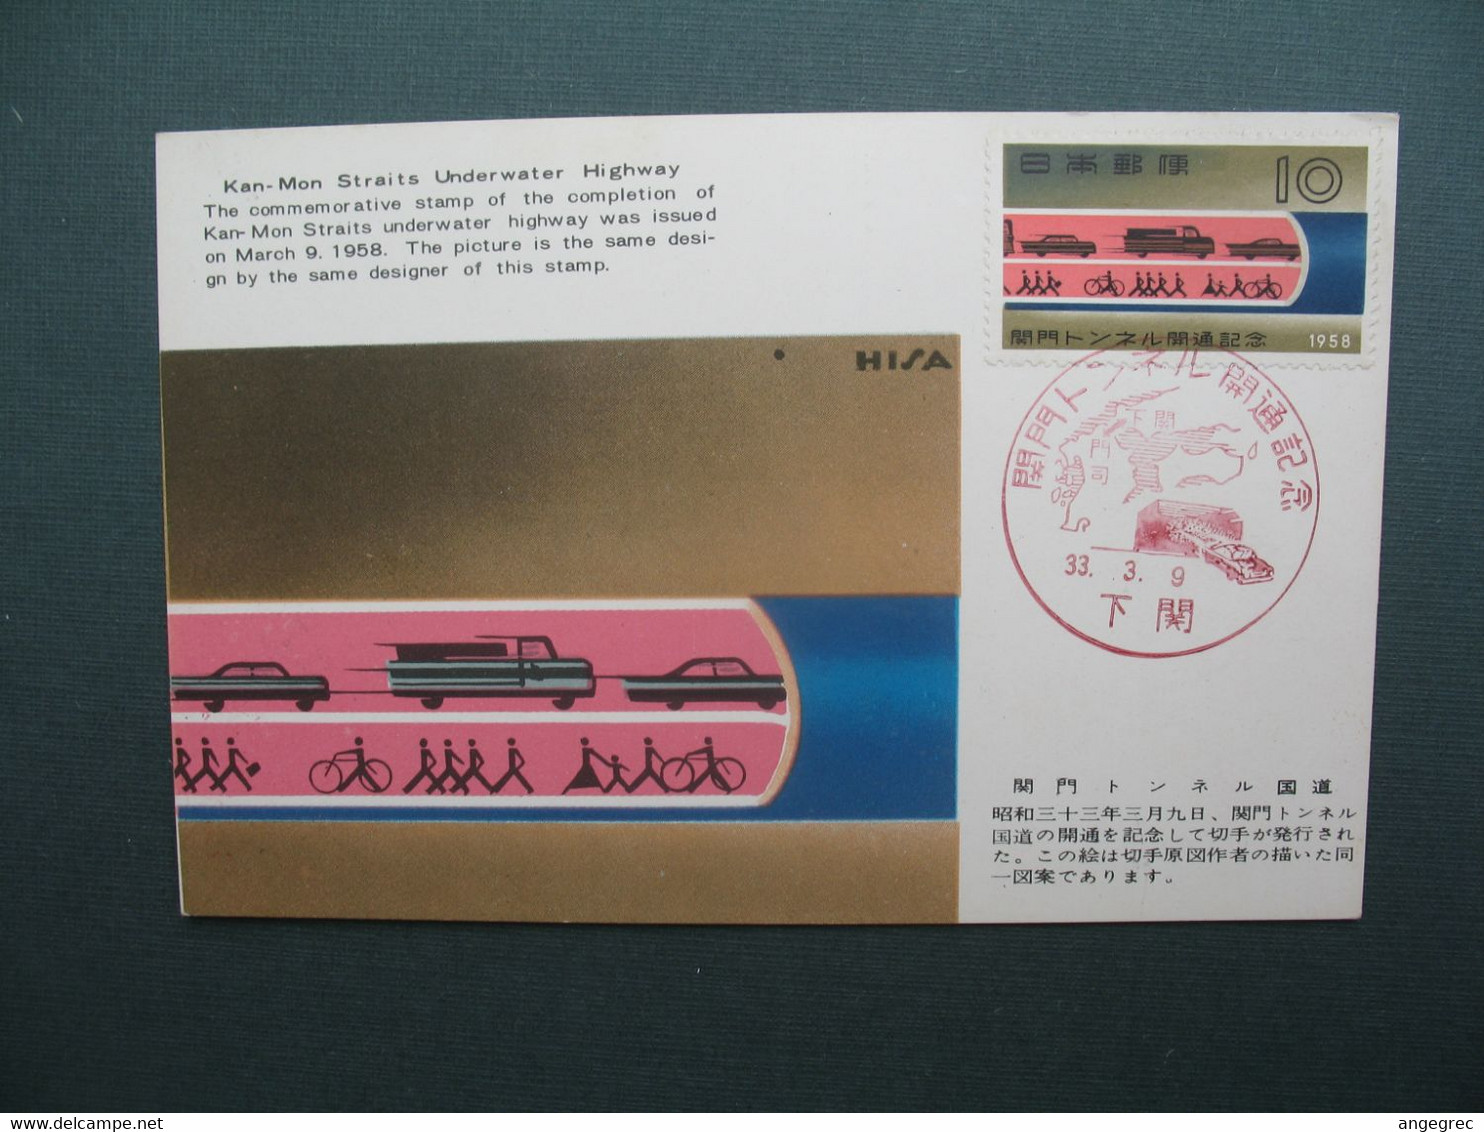 Japon  Carte-Maximum   Japan Maximum Card   1958   Yvert & Tellier    N° 600 - Cartes-maximum